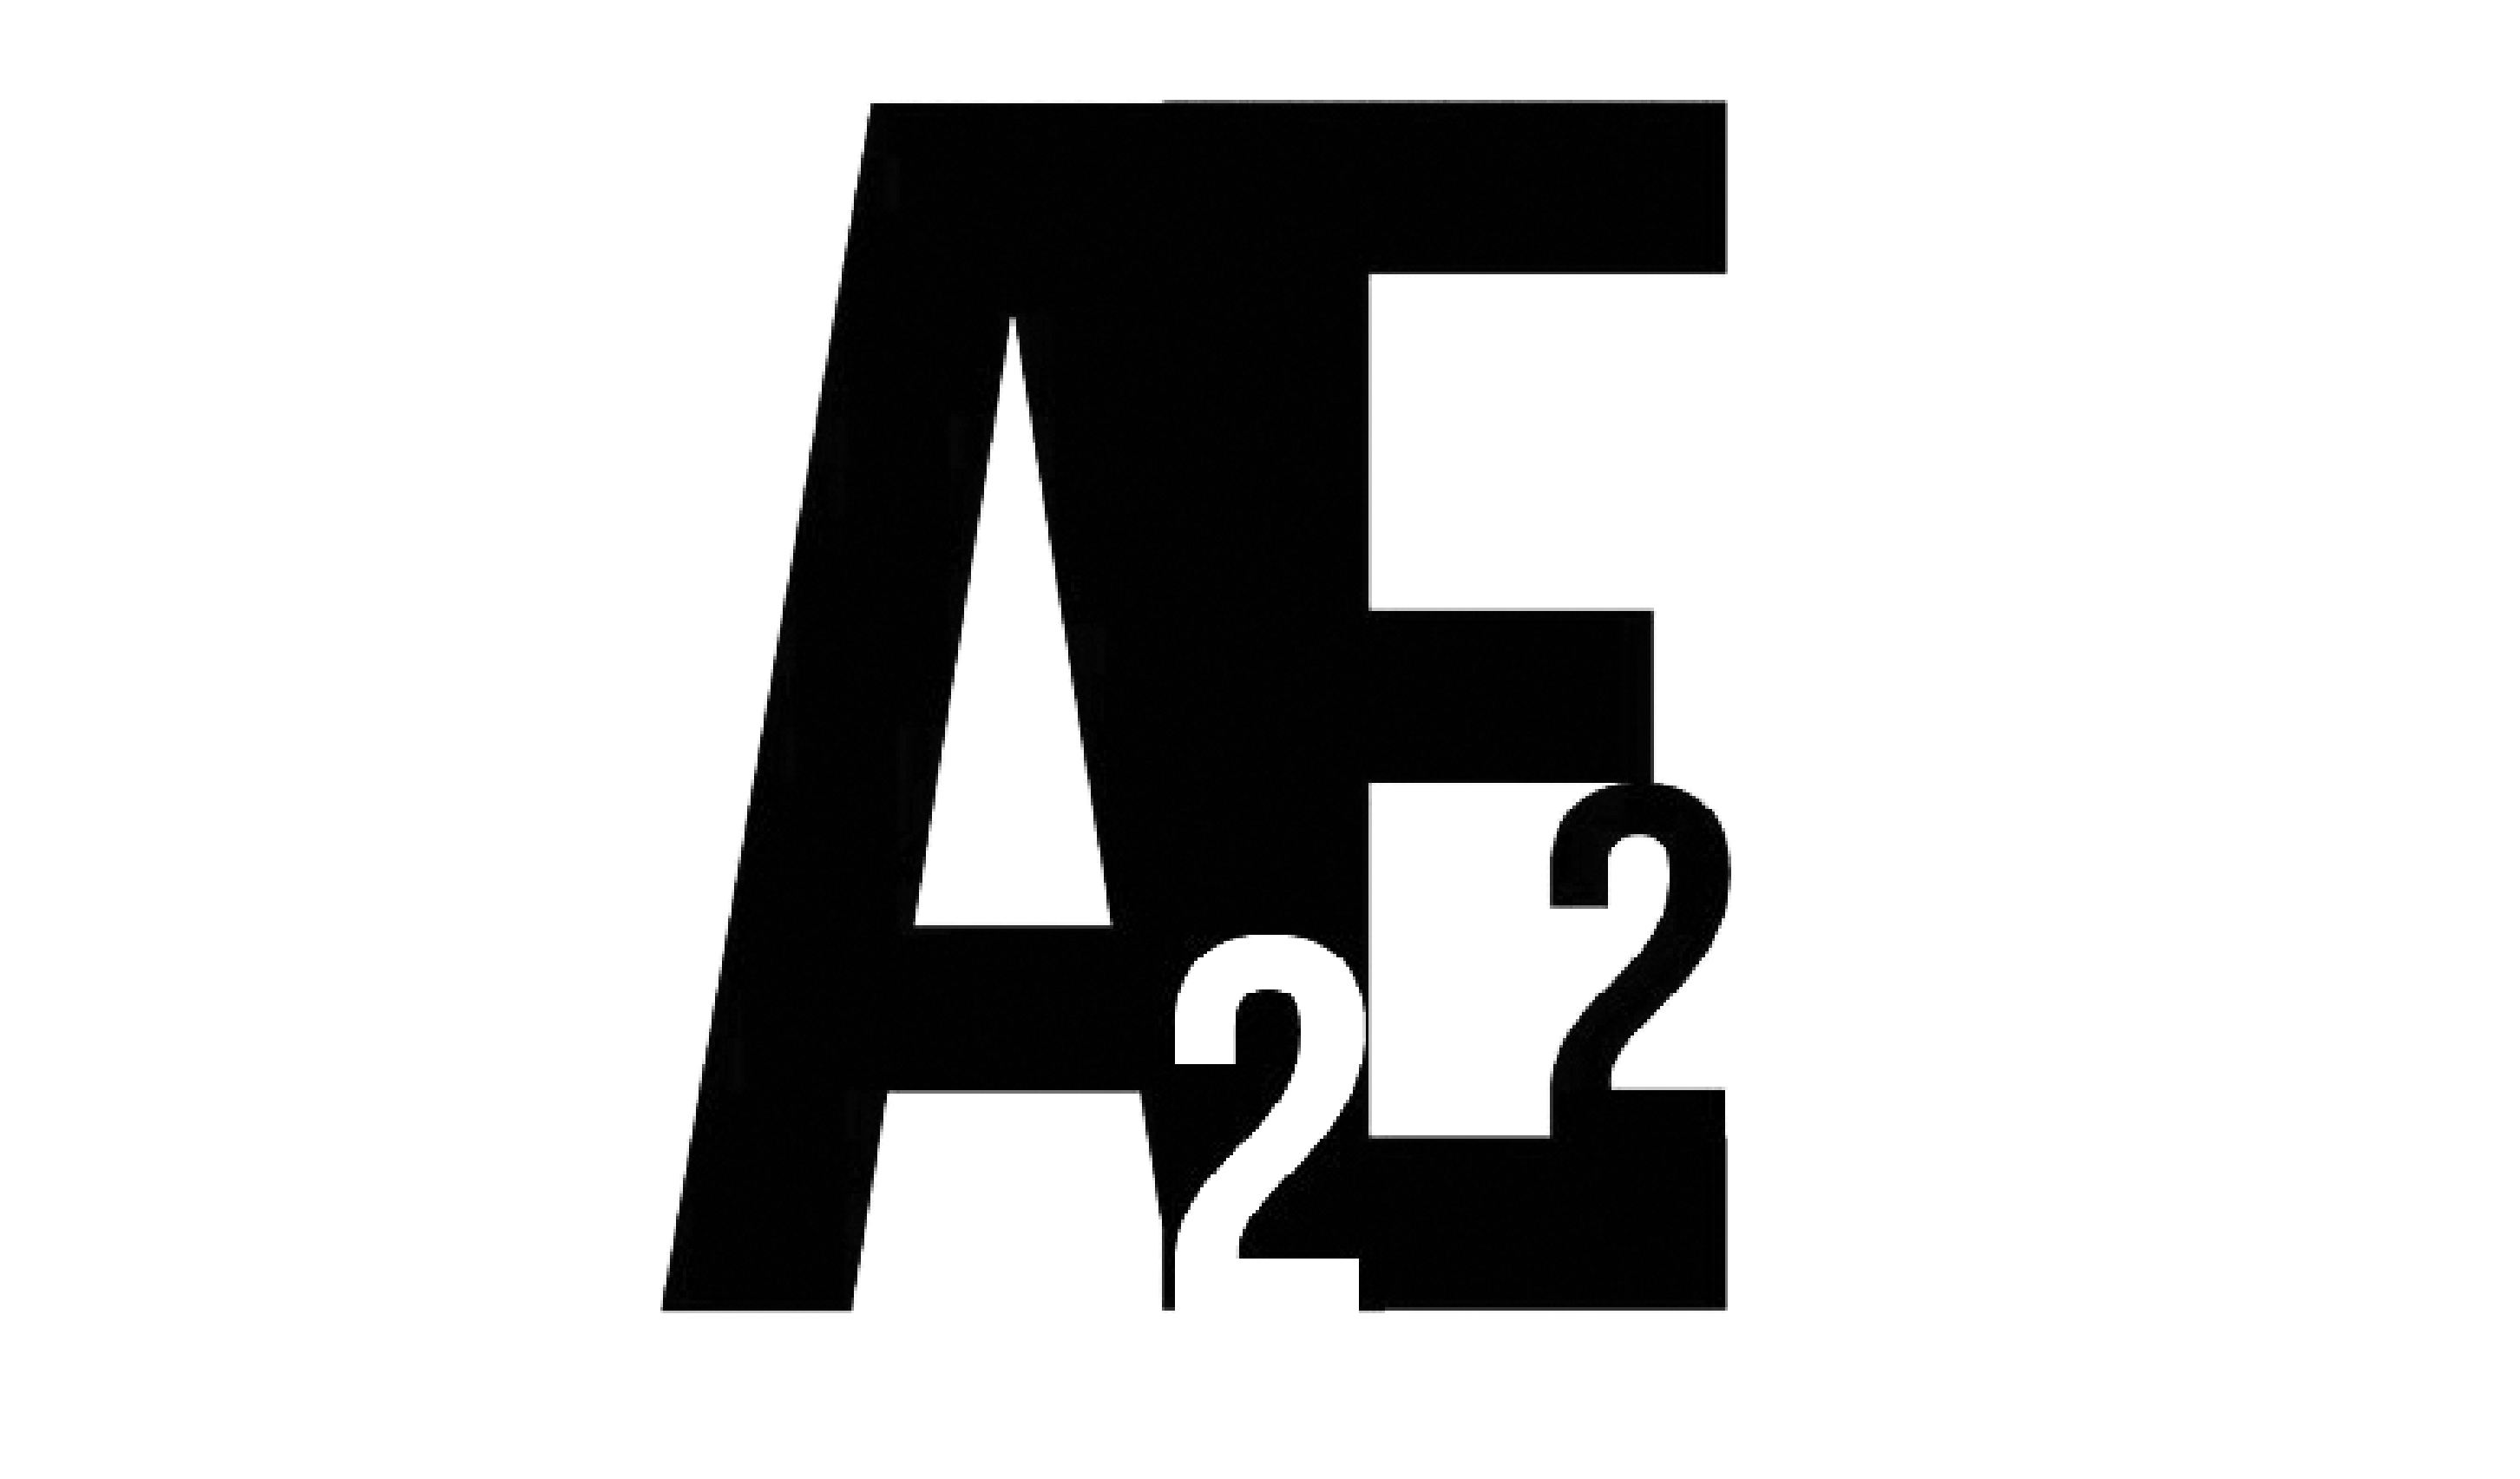 a2e2-footer